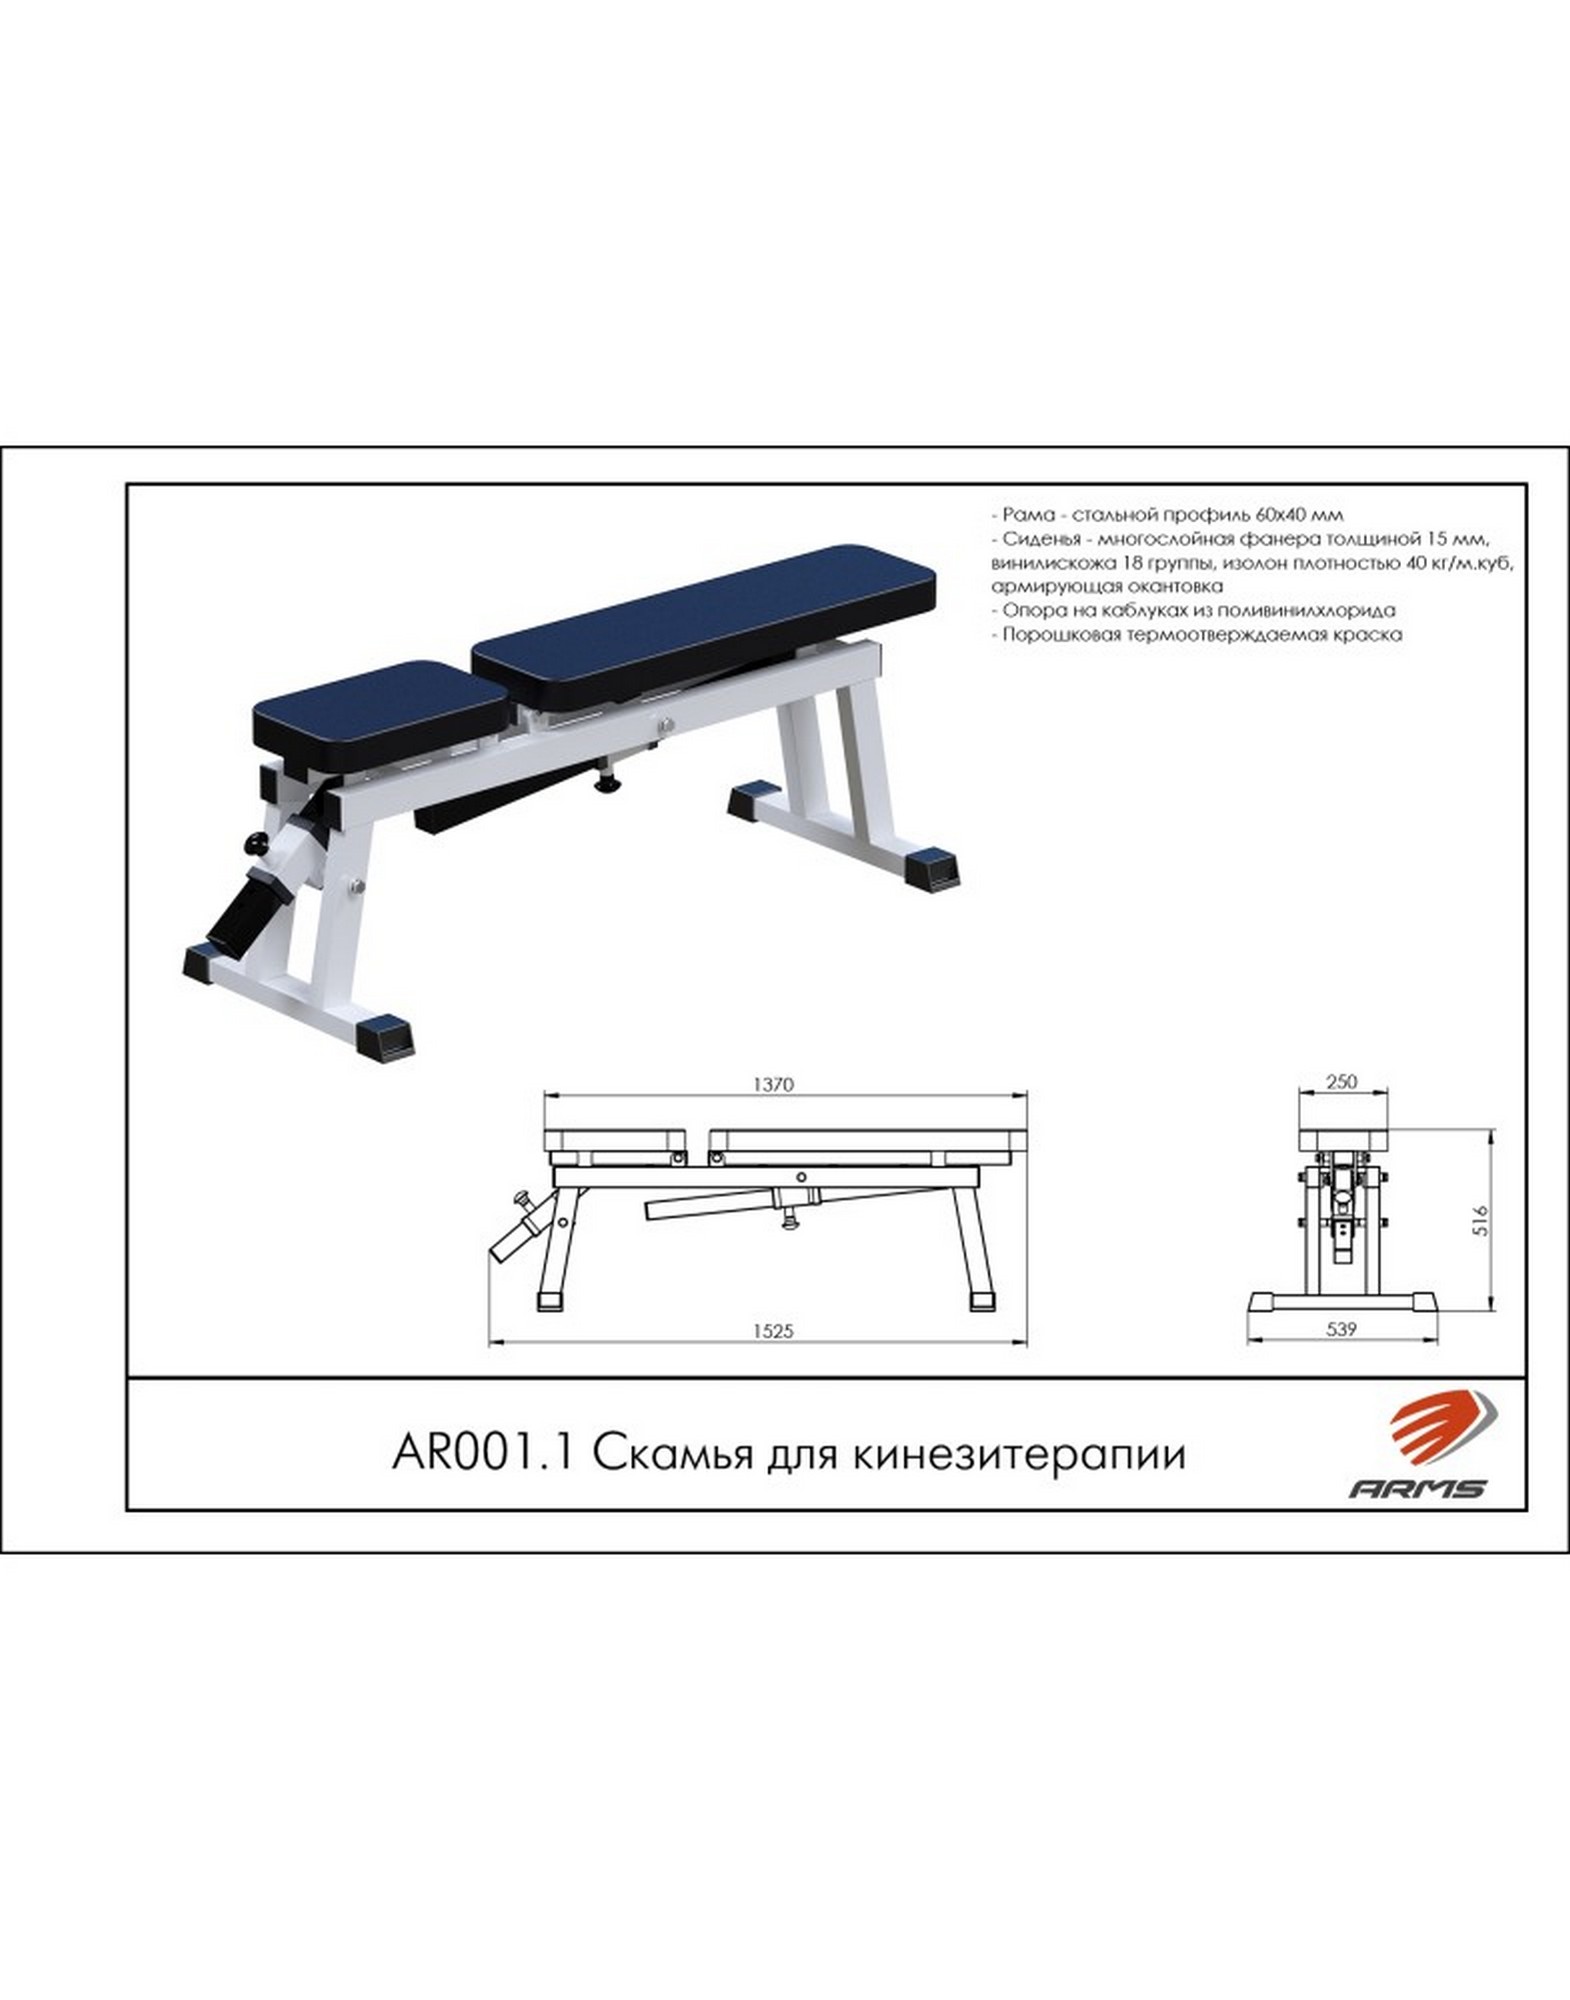 Скамья для кинезитерапии ARMS AR001.1 1570_2000